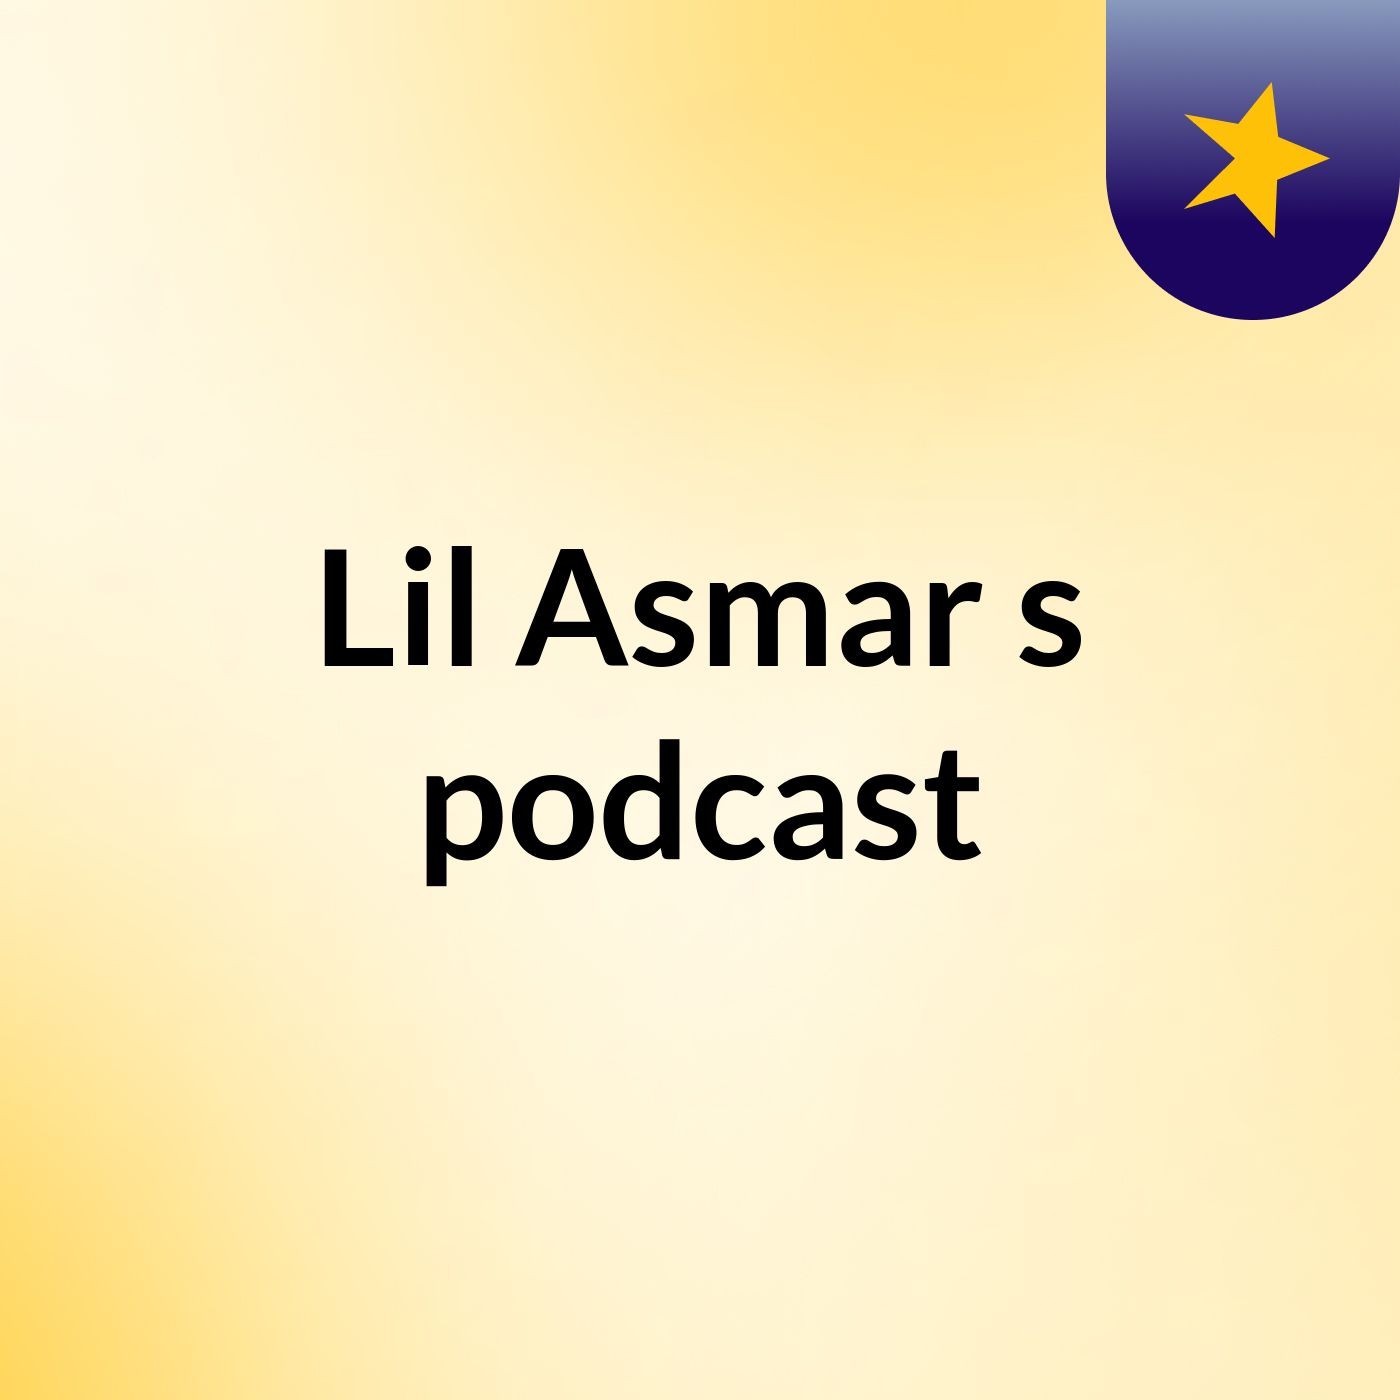 Episode 13 - Lil Asmar's podcast